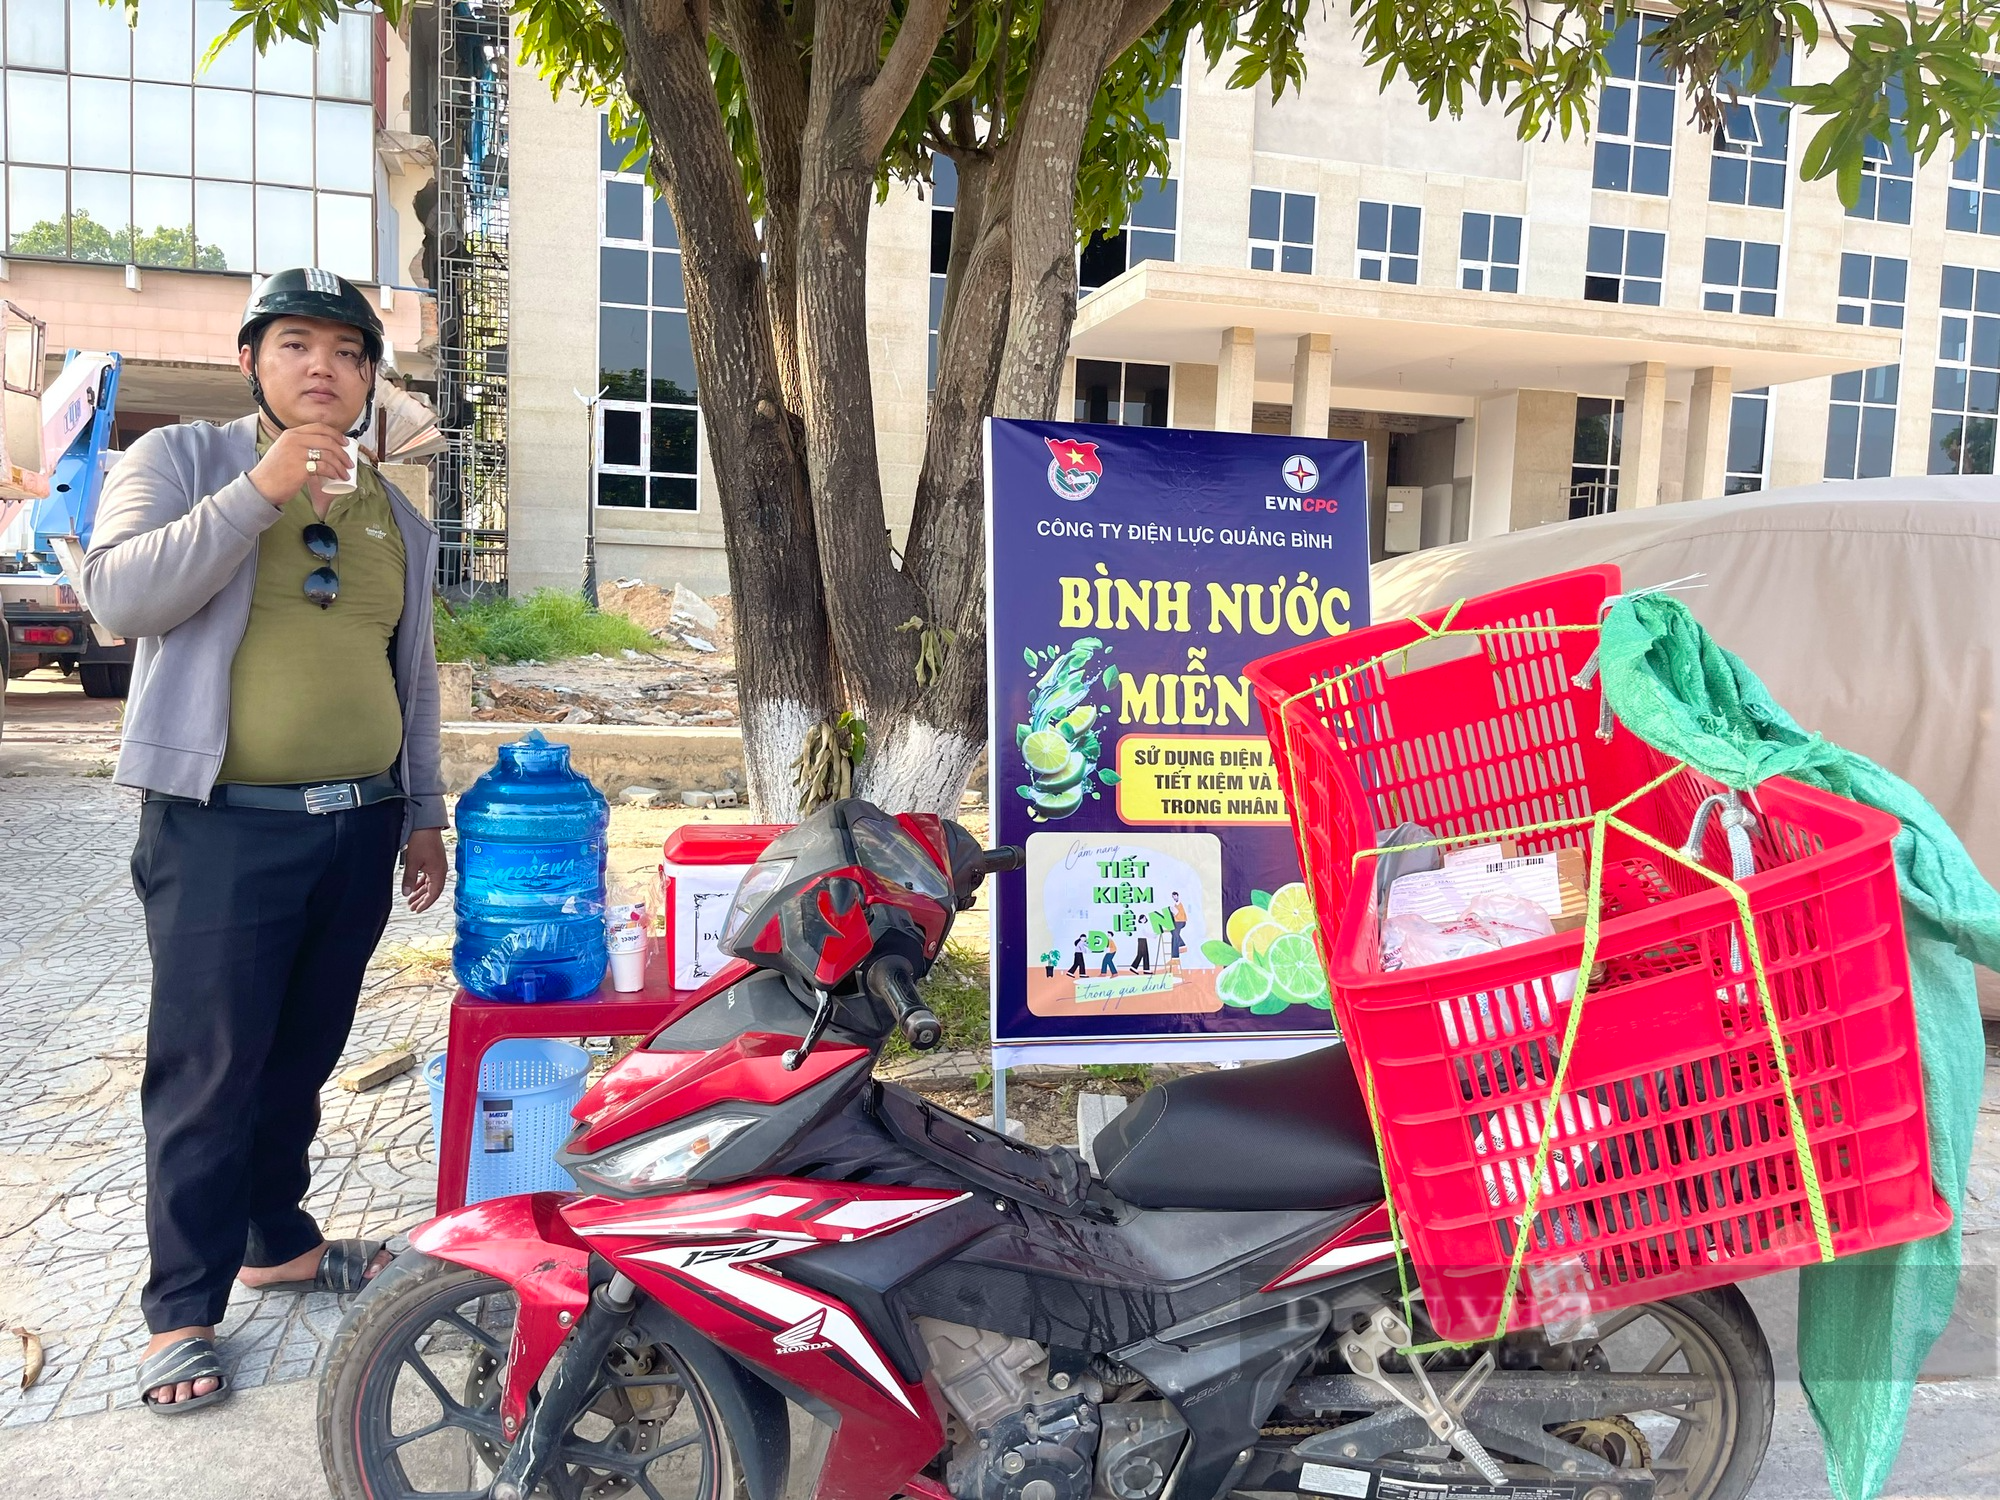 Nắng nóng ở Quảng Bình: Điểm cấp nước uống miễn phí giúp người dân đã cơn khát, giải nhiệt trong ngày hè oi ả - Ảnh 3.